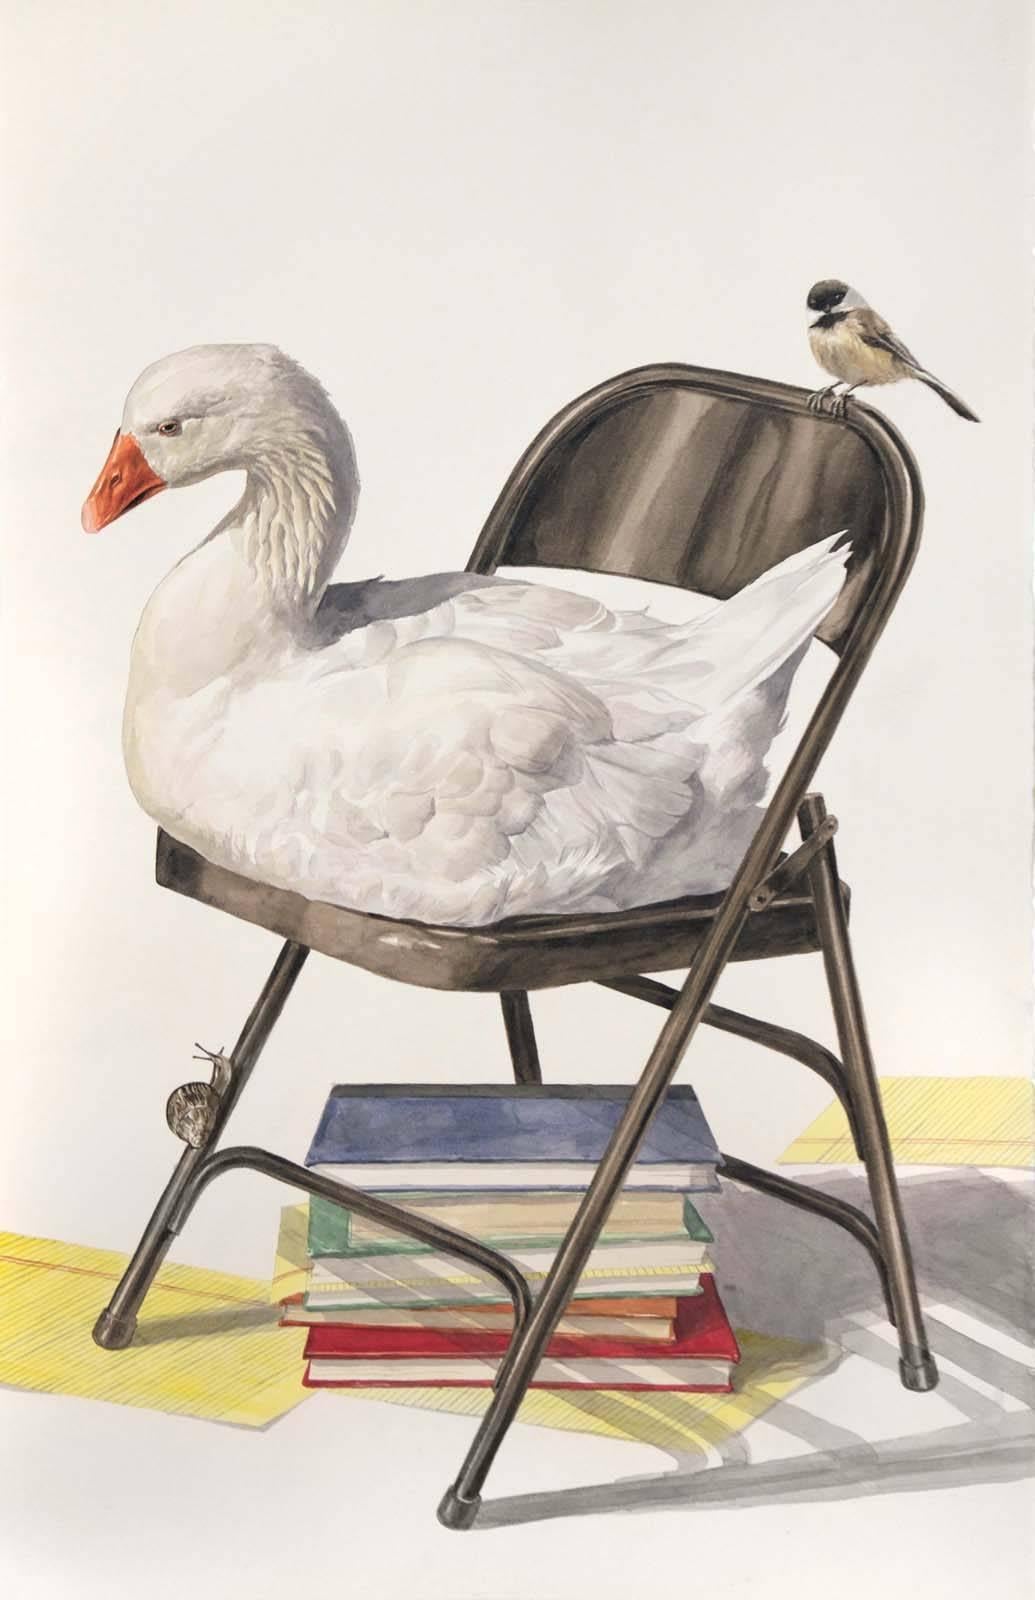 Aquarelle surréaliste contemporaine « Golden Goose », encadrée